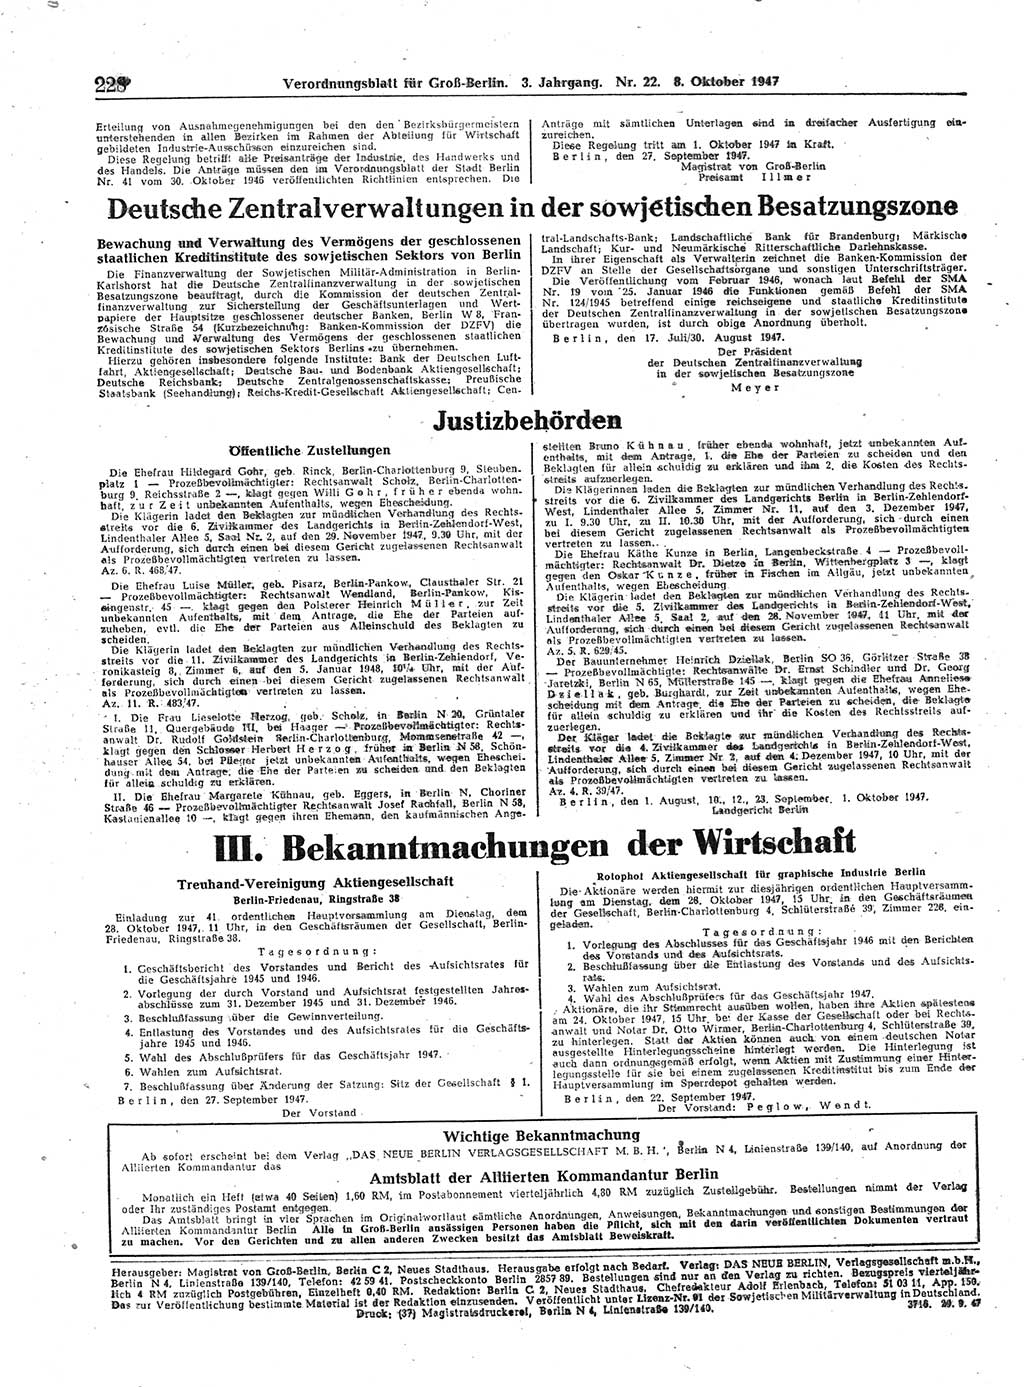 Verordnungsblatt (VOBl.) für Groß-Berlin 1947, Seite 228 (VOBl. Bln. 1947, S. 228)